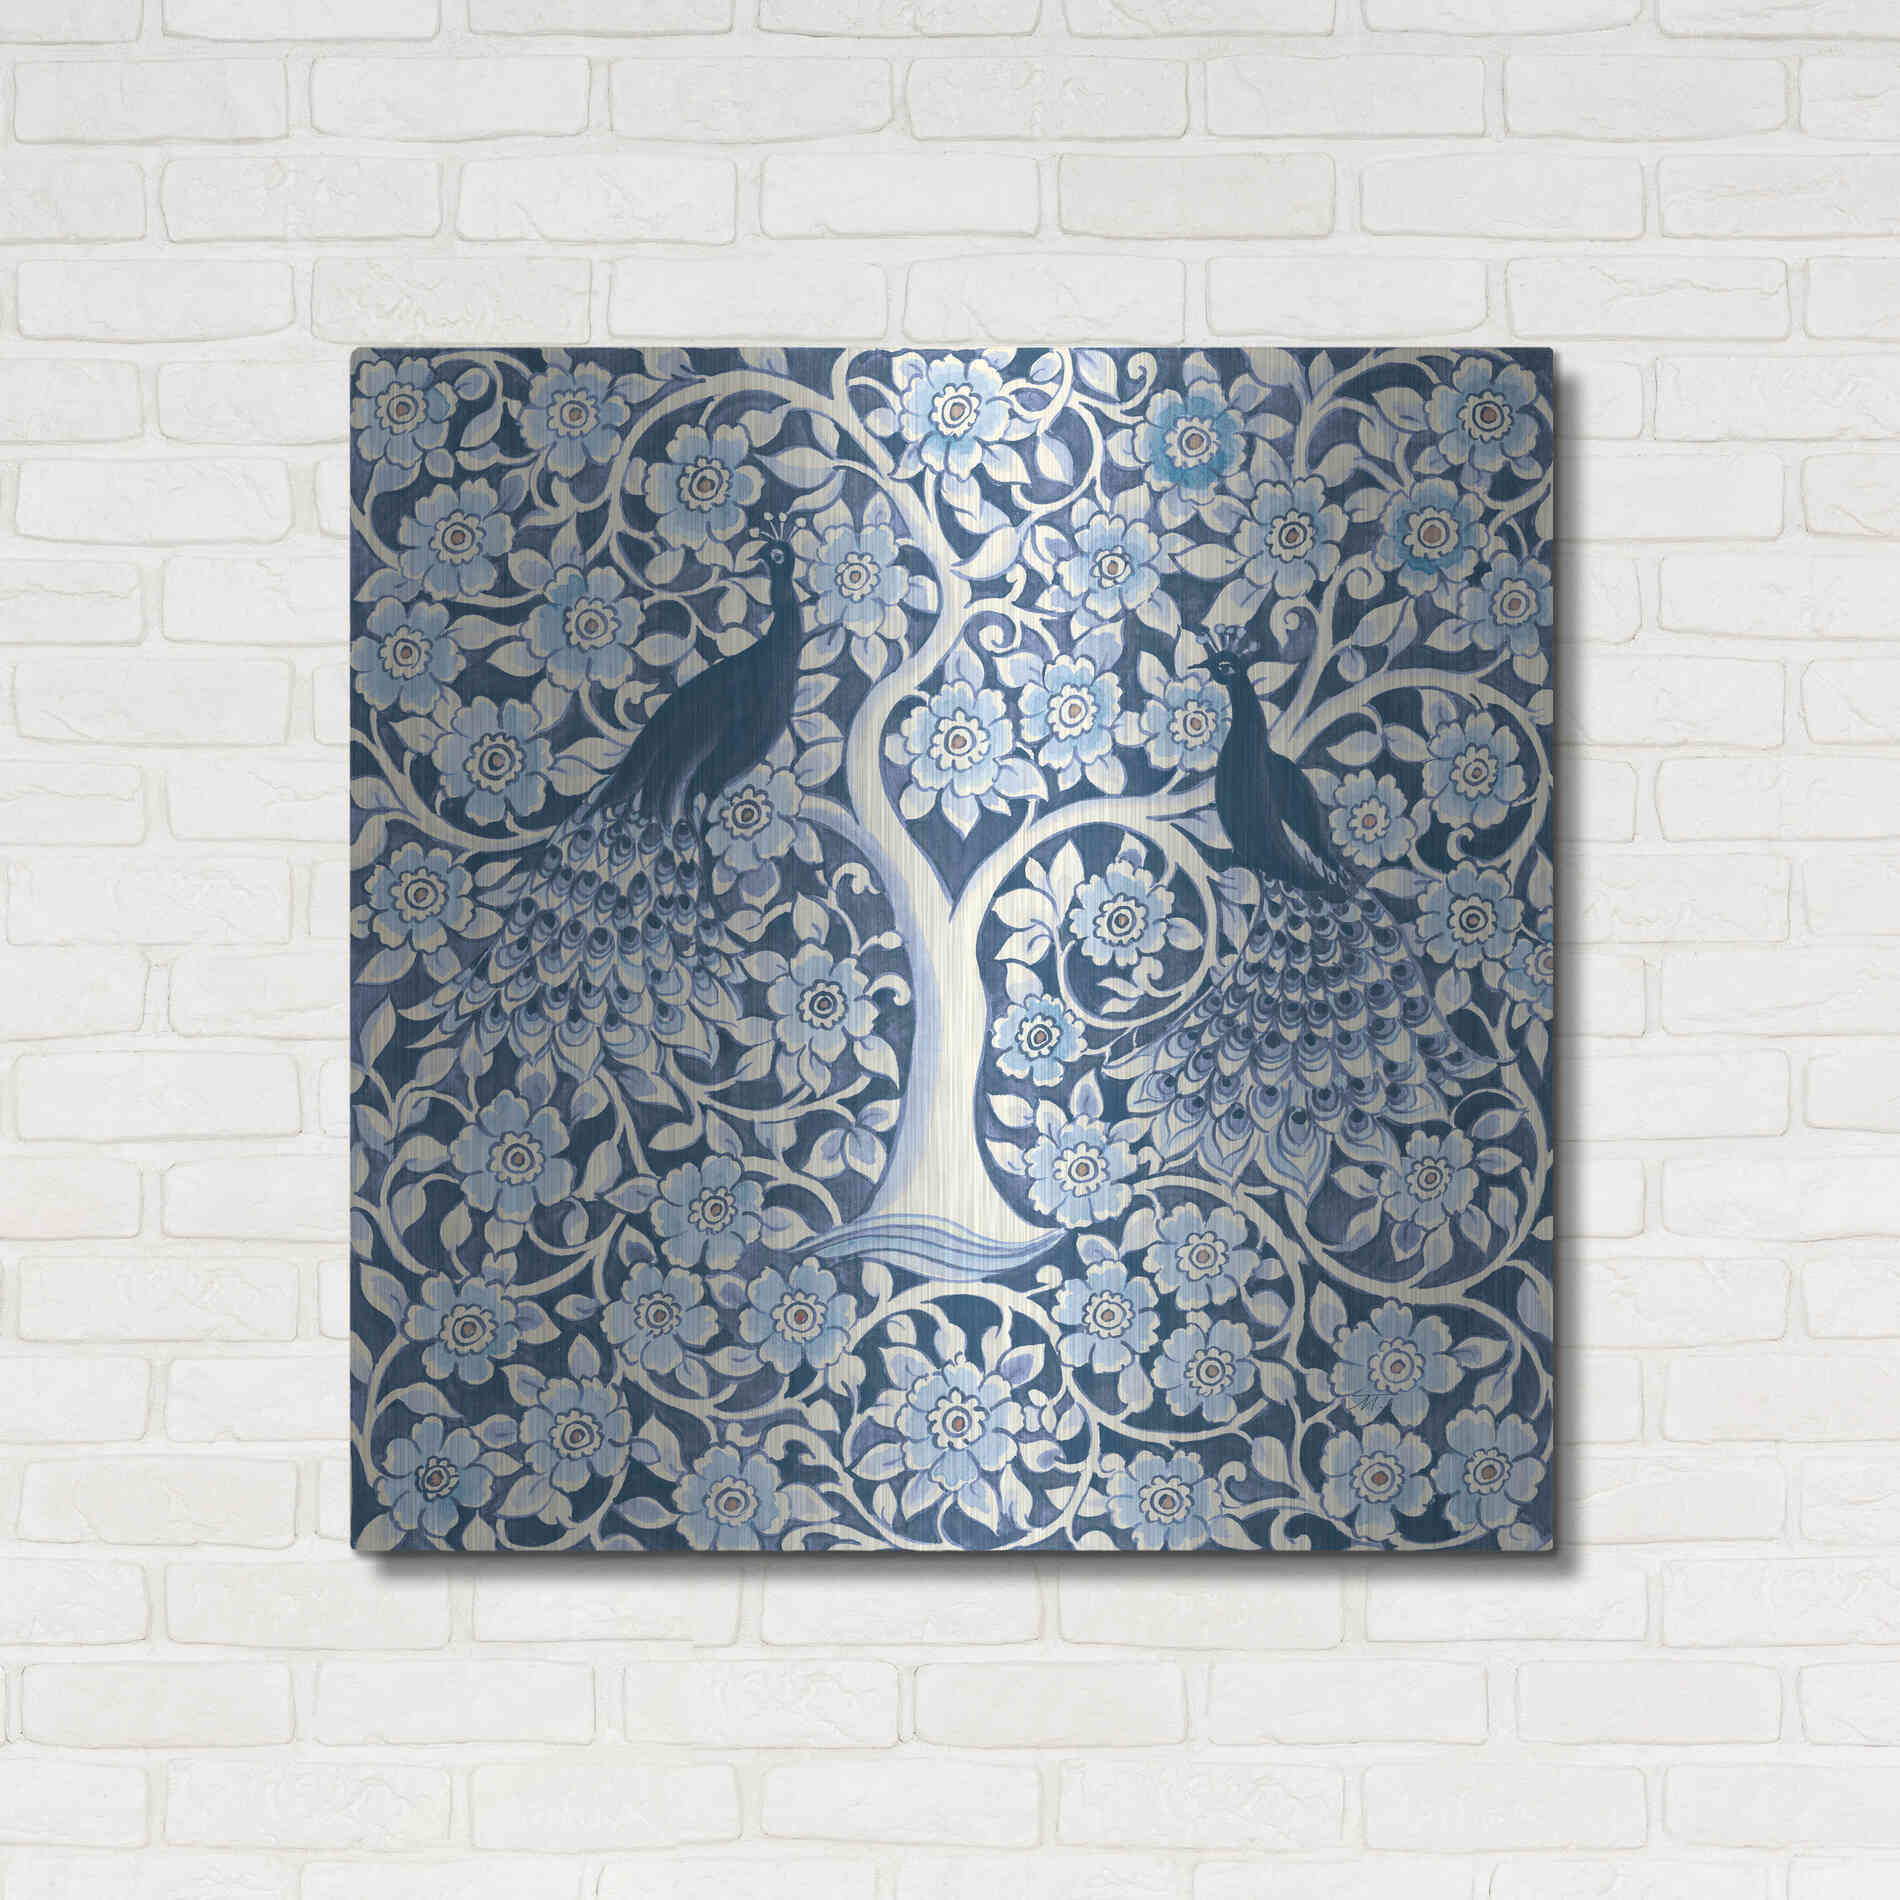 Luxe Metal Art 'Peacock Garden VII v2' by Miranda Thomas, Metal Wall Art,36x36